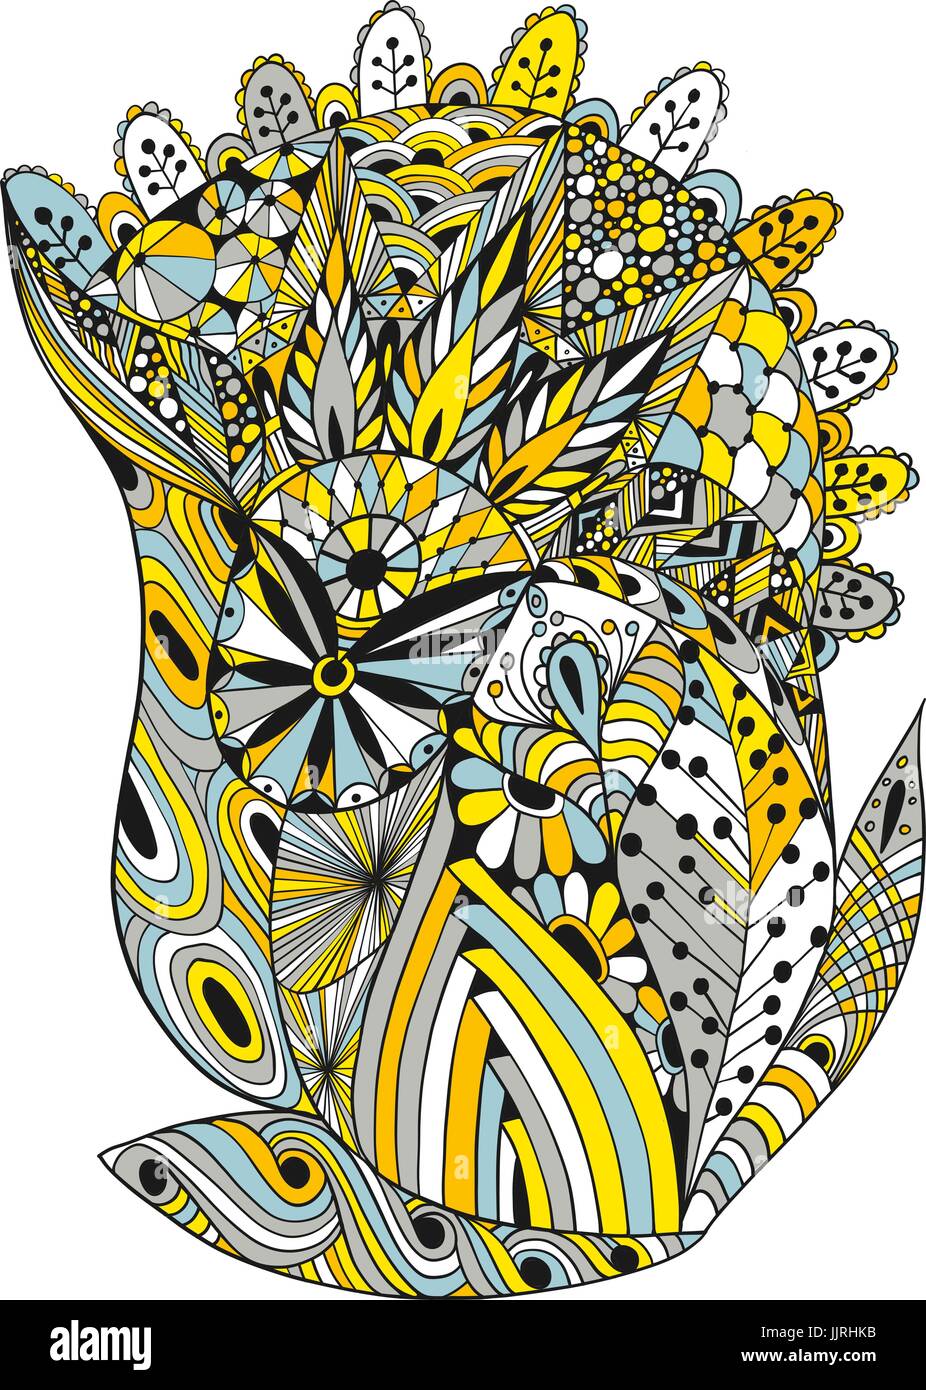 Vektor-Illustration der abstrakten dekorativen doodles Stock Vektor